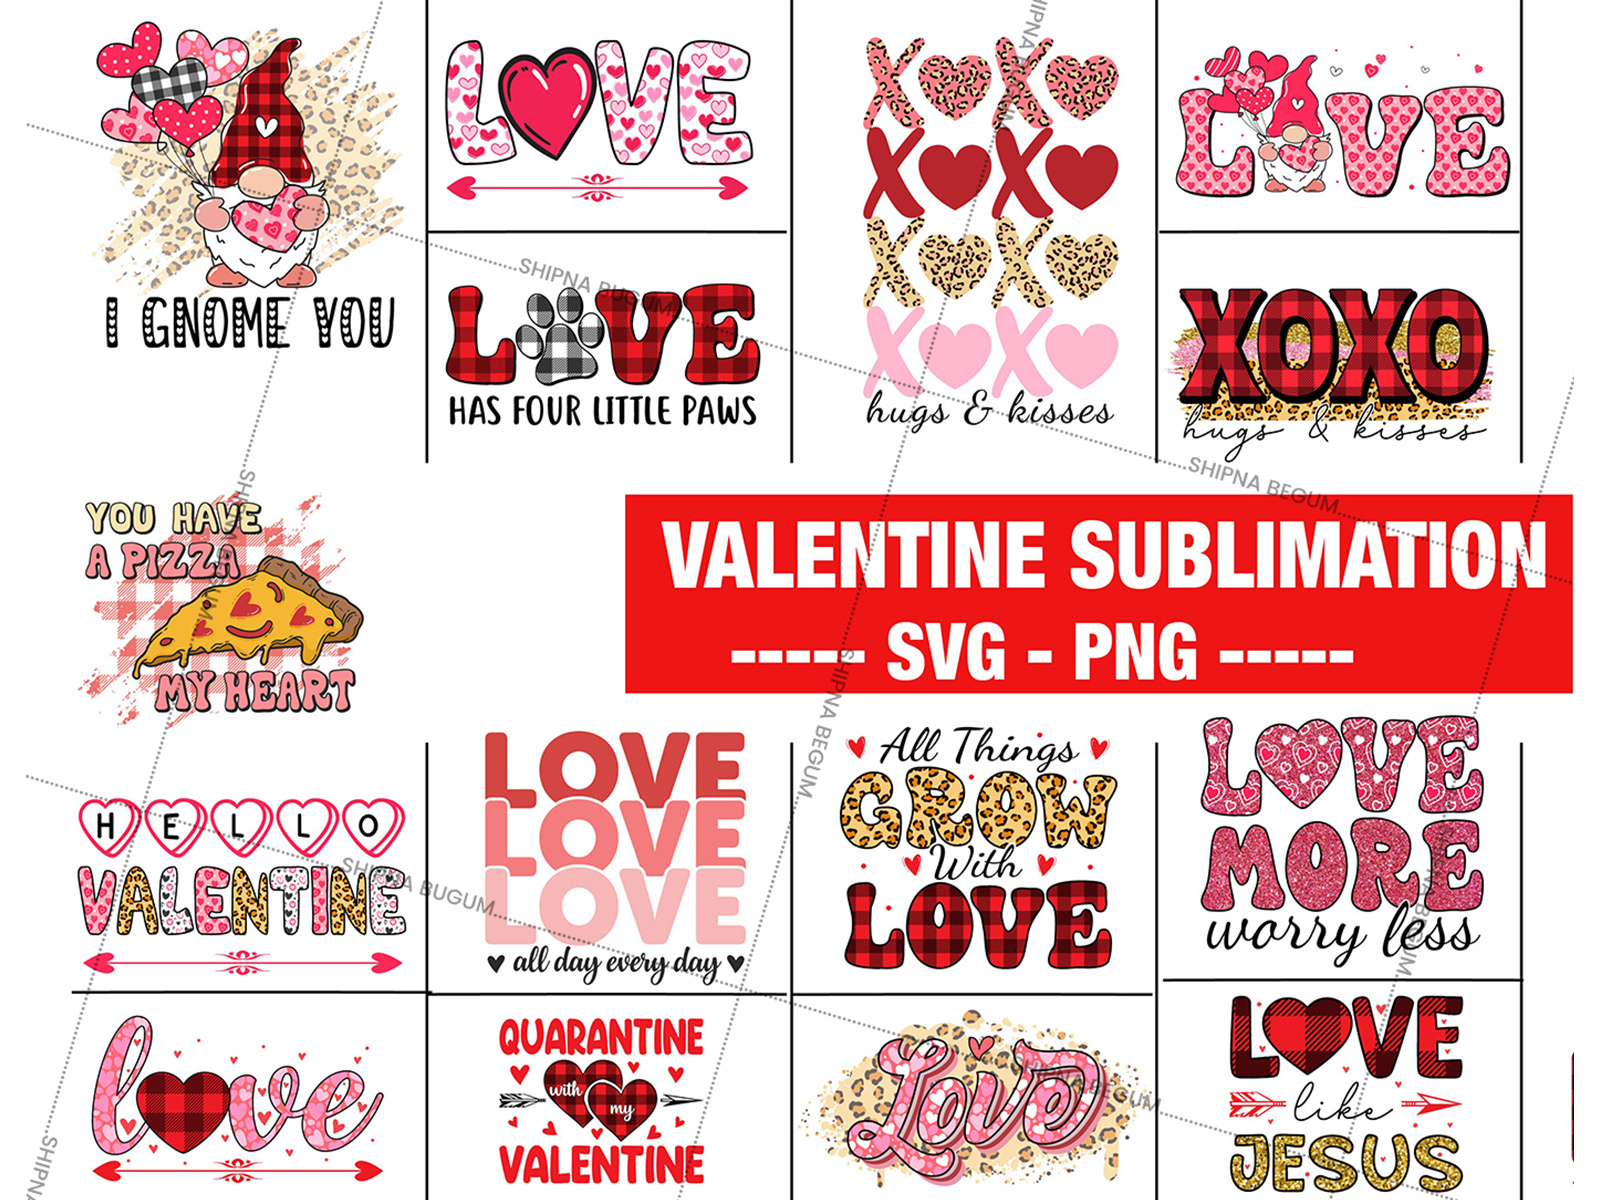 Valentine Sublimation Designs Bundle SVG PNG by Shipna Begum on Dribbble